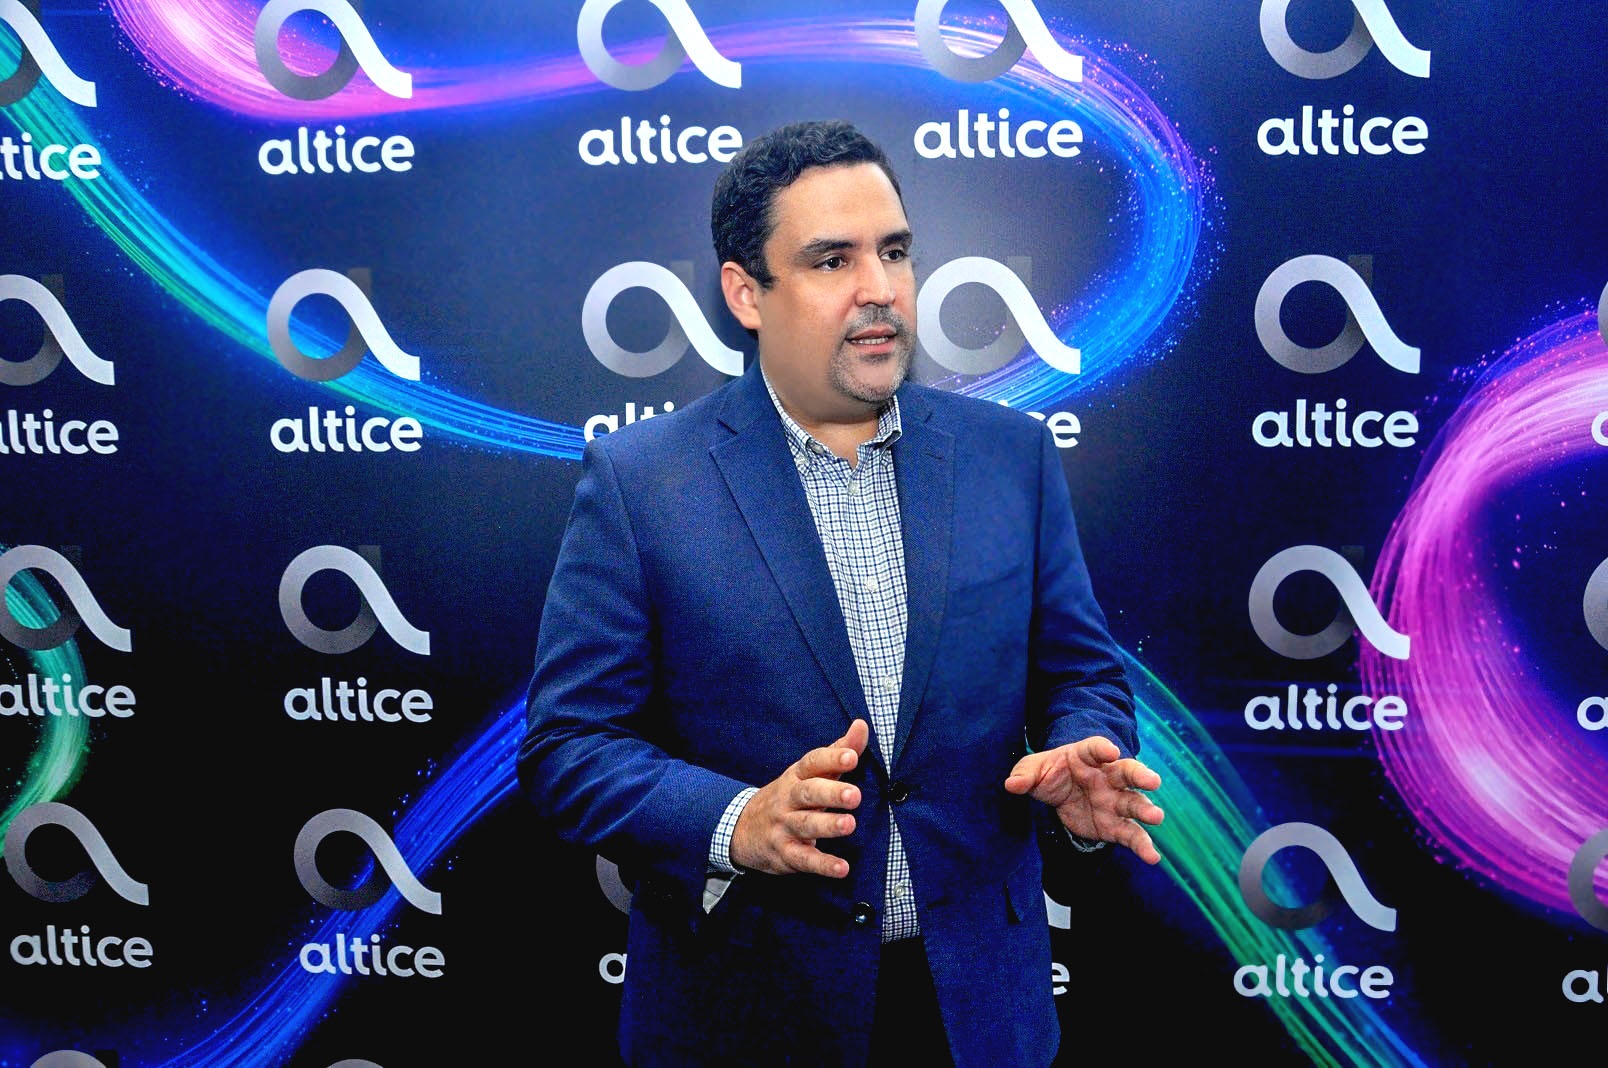 Video |Altice lanza Voz sobre LTE (VoLTE), una innovación para realizar llamadas en alta definición